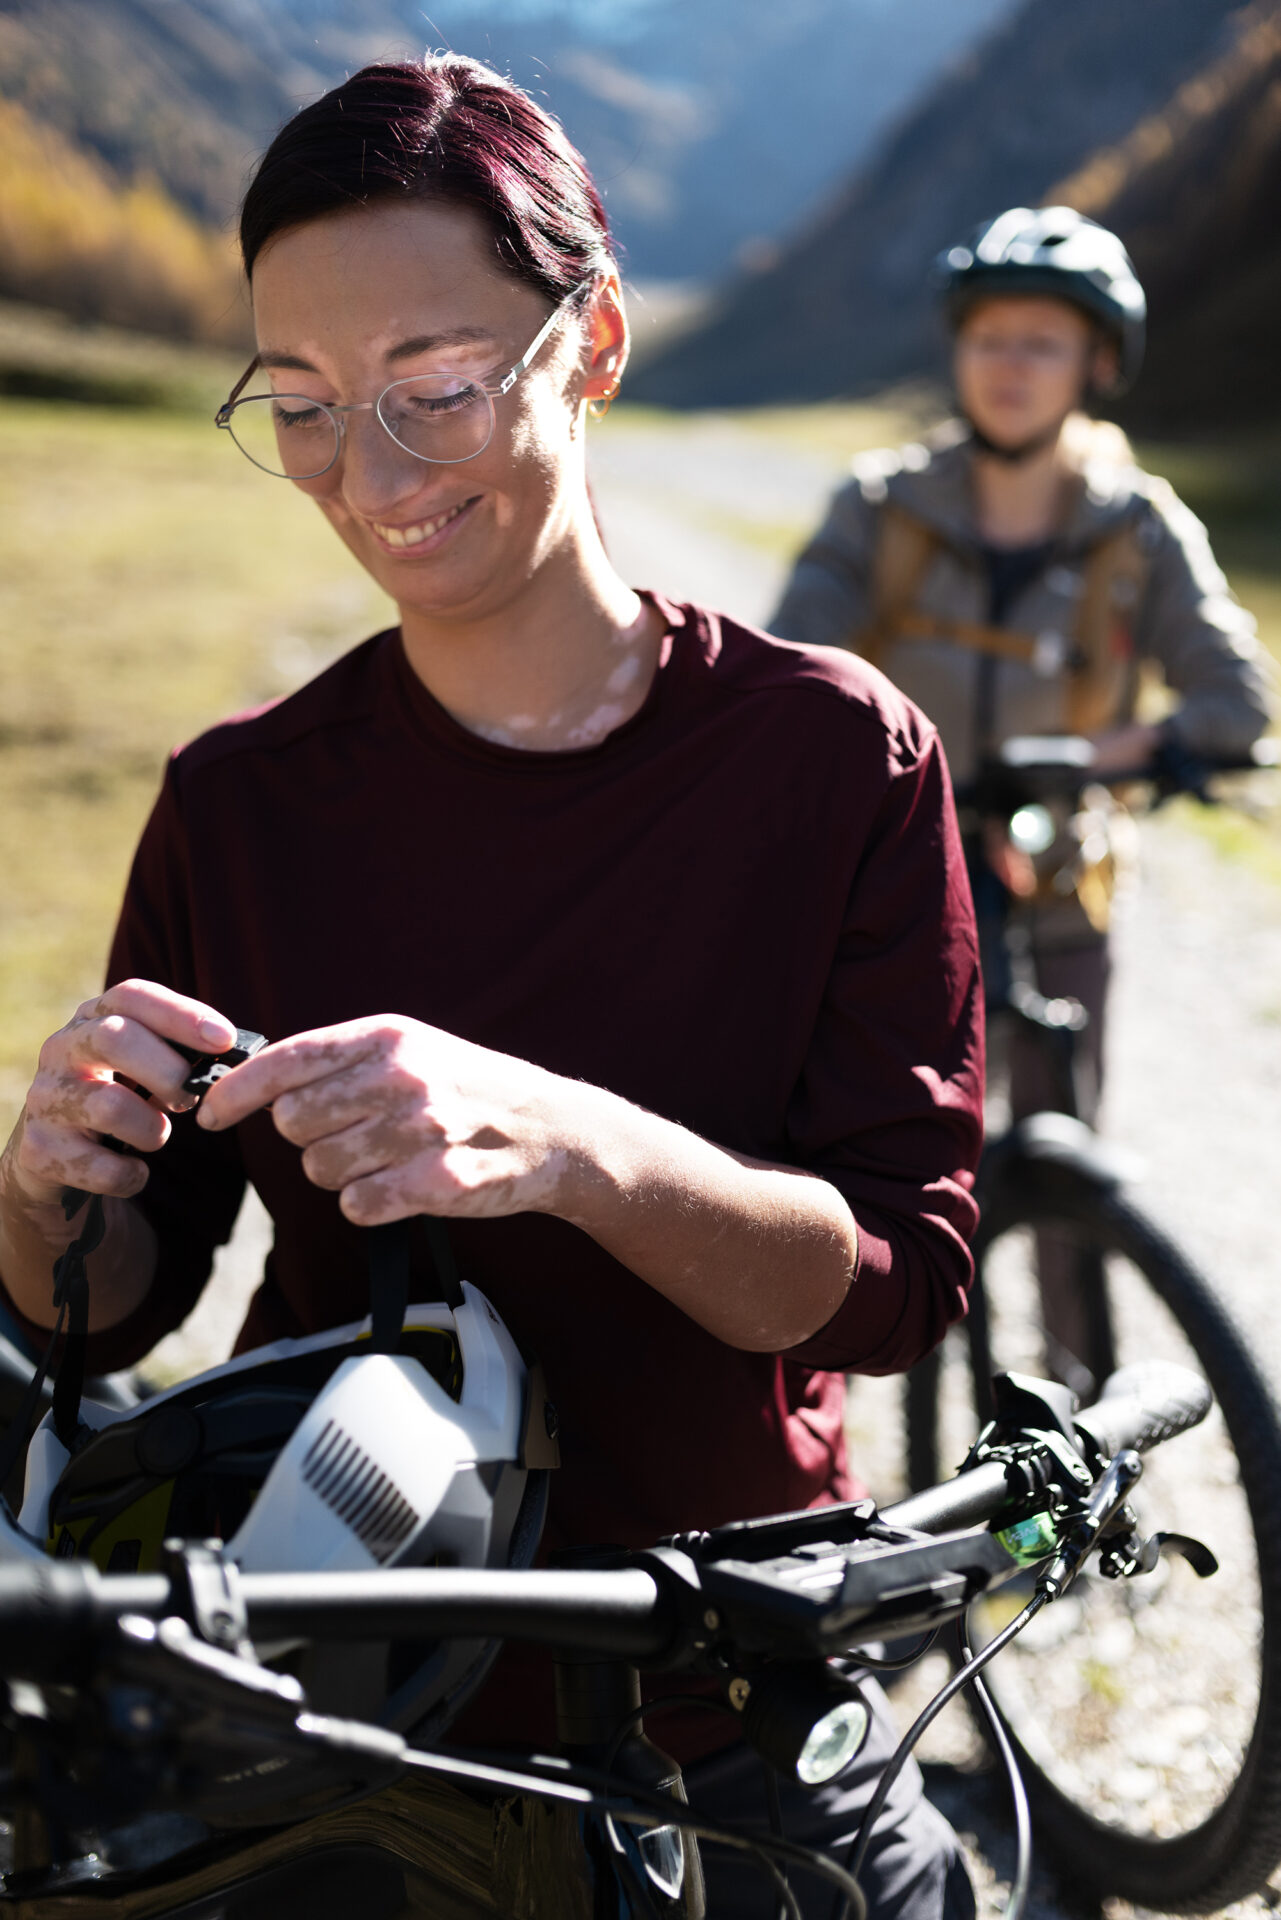 Junge Frau mit Brille mit Premium-Brillengläsern von Leica zieht einen Fahrradhelm auf